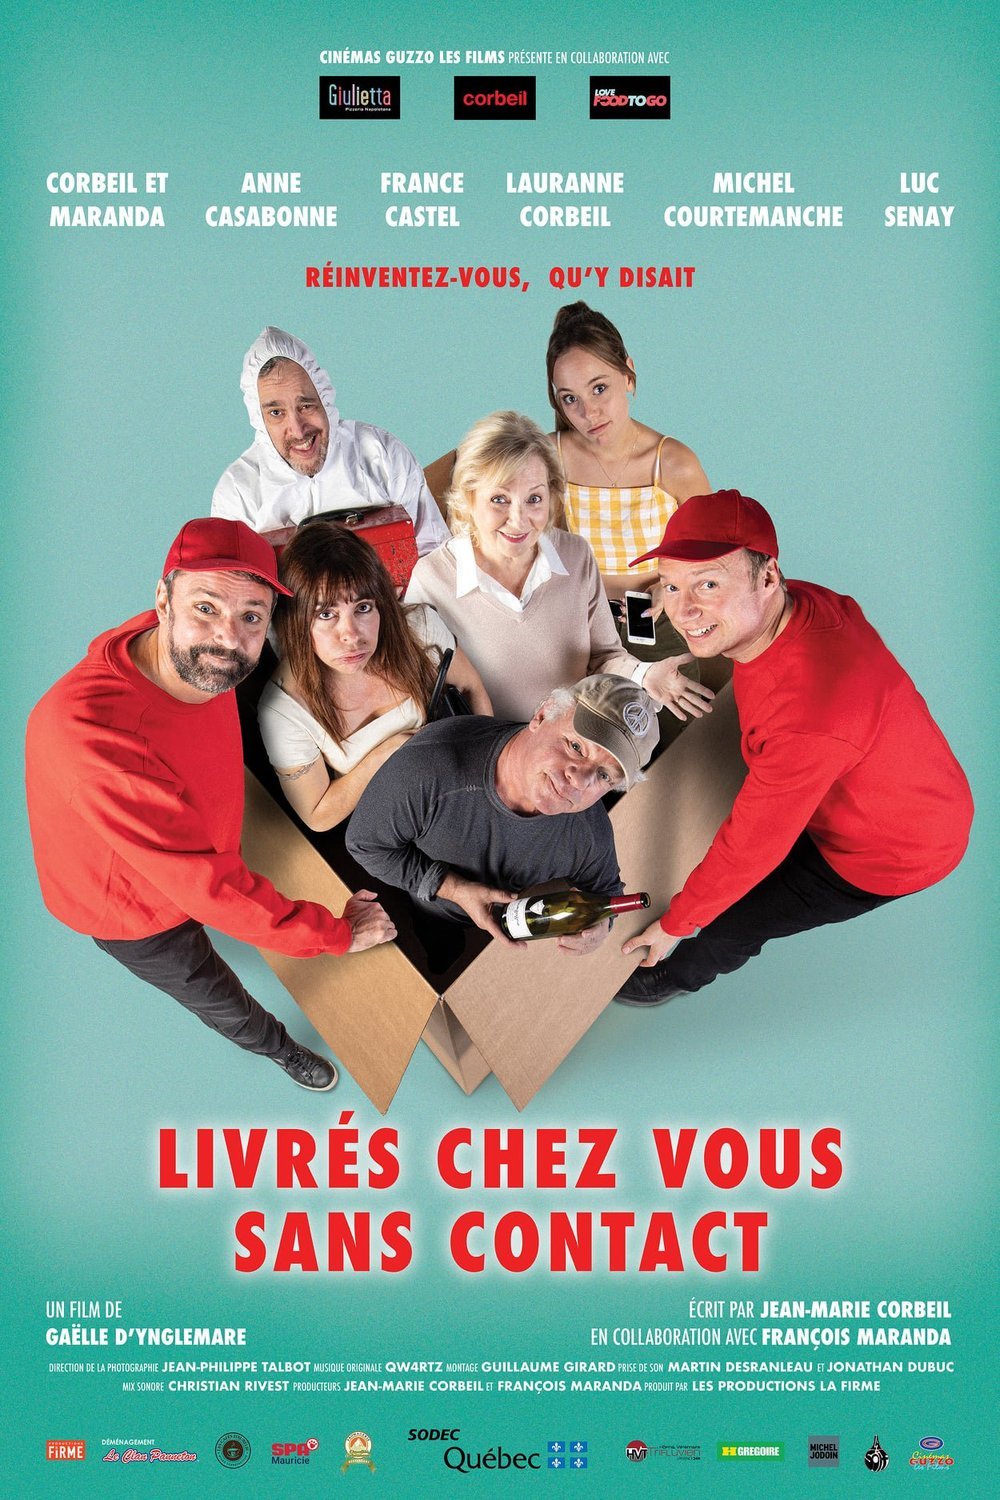 Poster of the movie Livrés chez vous sans contact